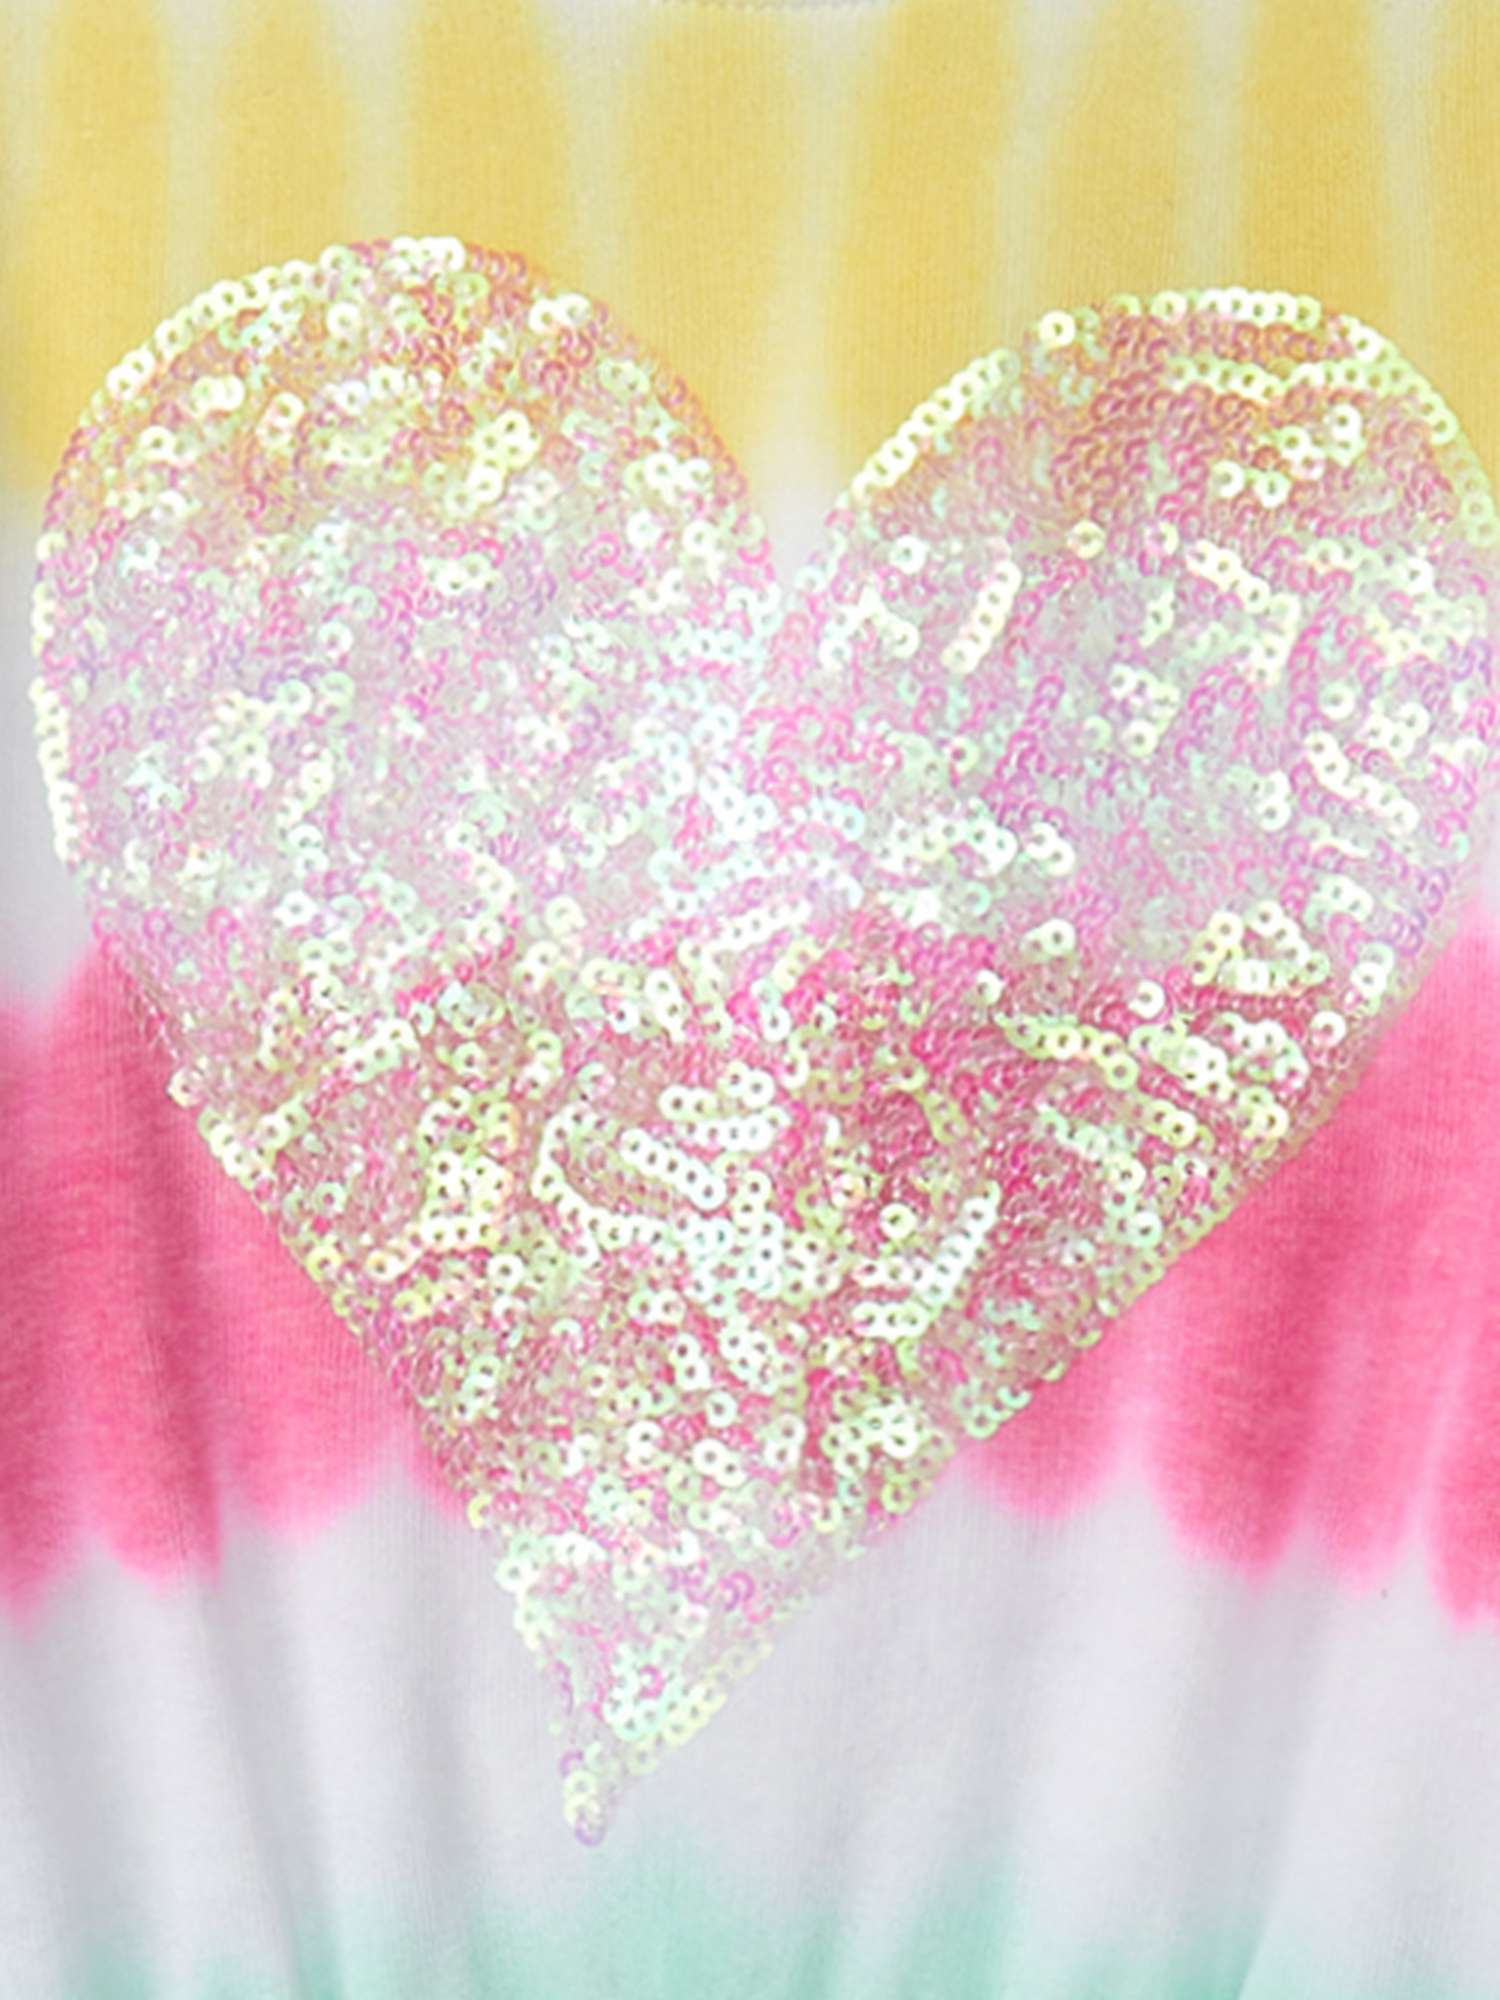 Buy Hatley Kids' Sunset Tie Dye Pull On Dress, White/Multi Online at johnlewis.com